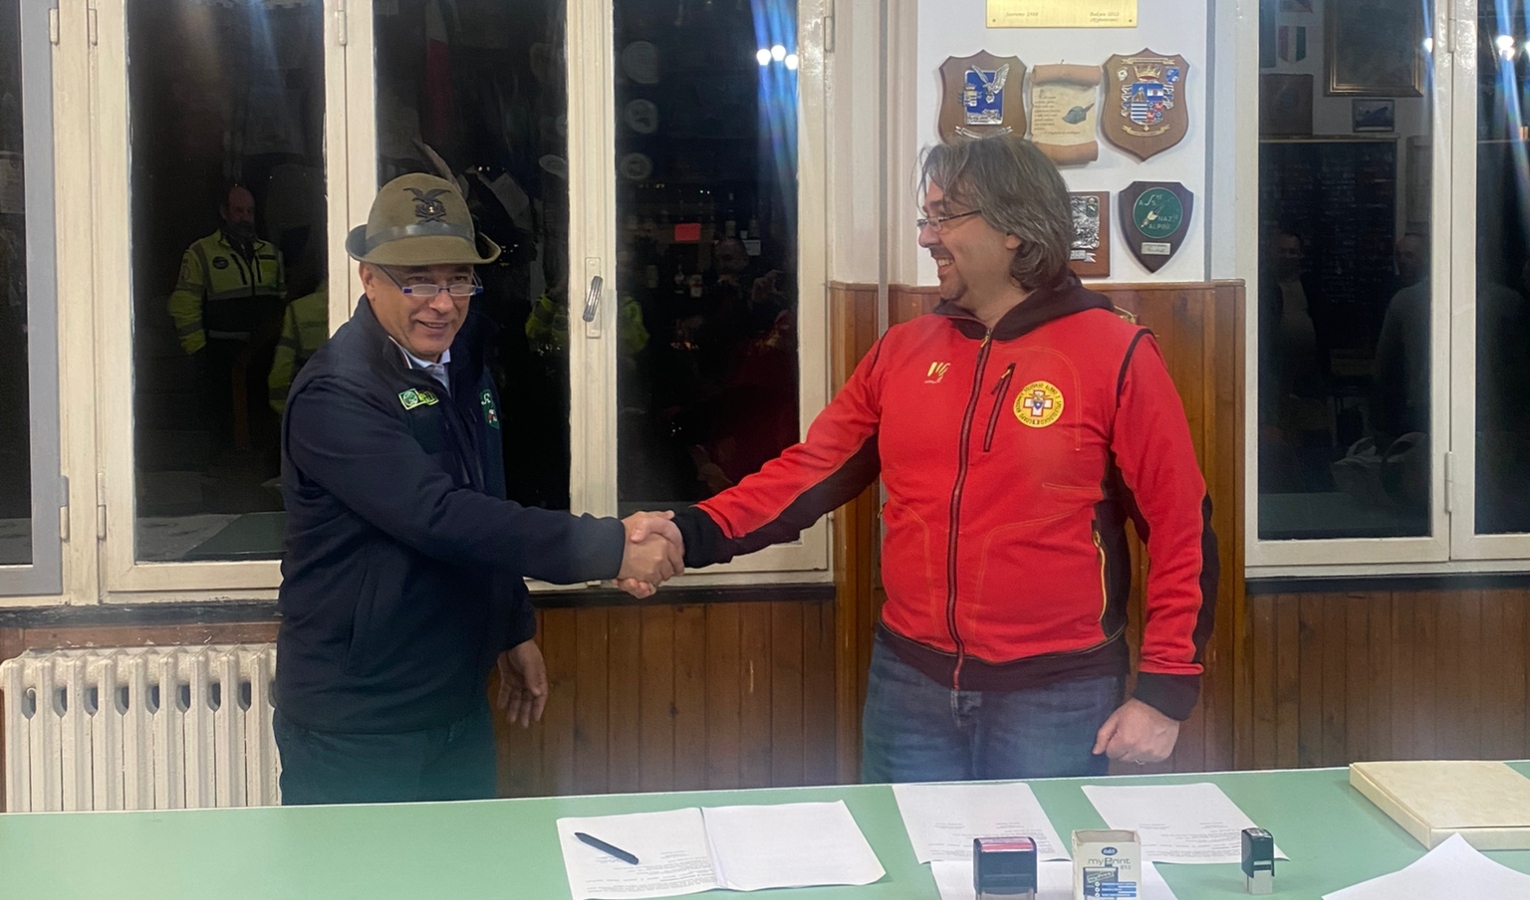 In Liguria accordo tra soccorso alpino e associazione alpini